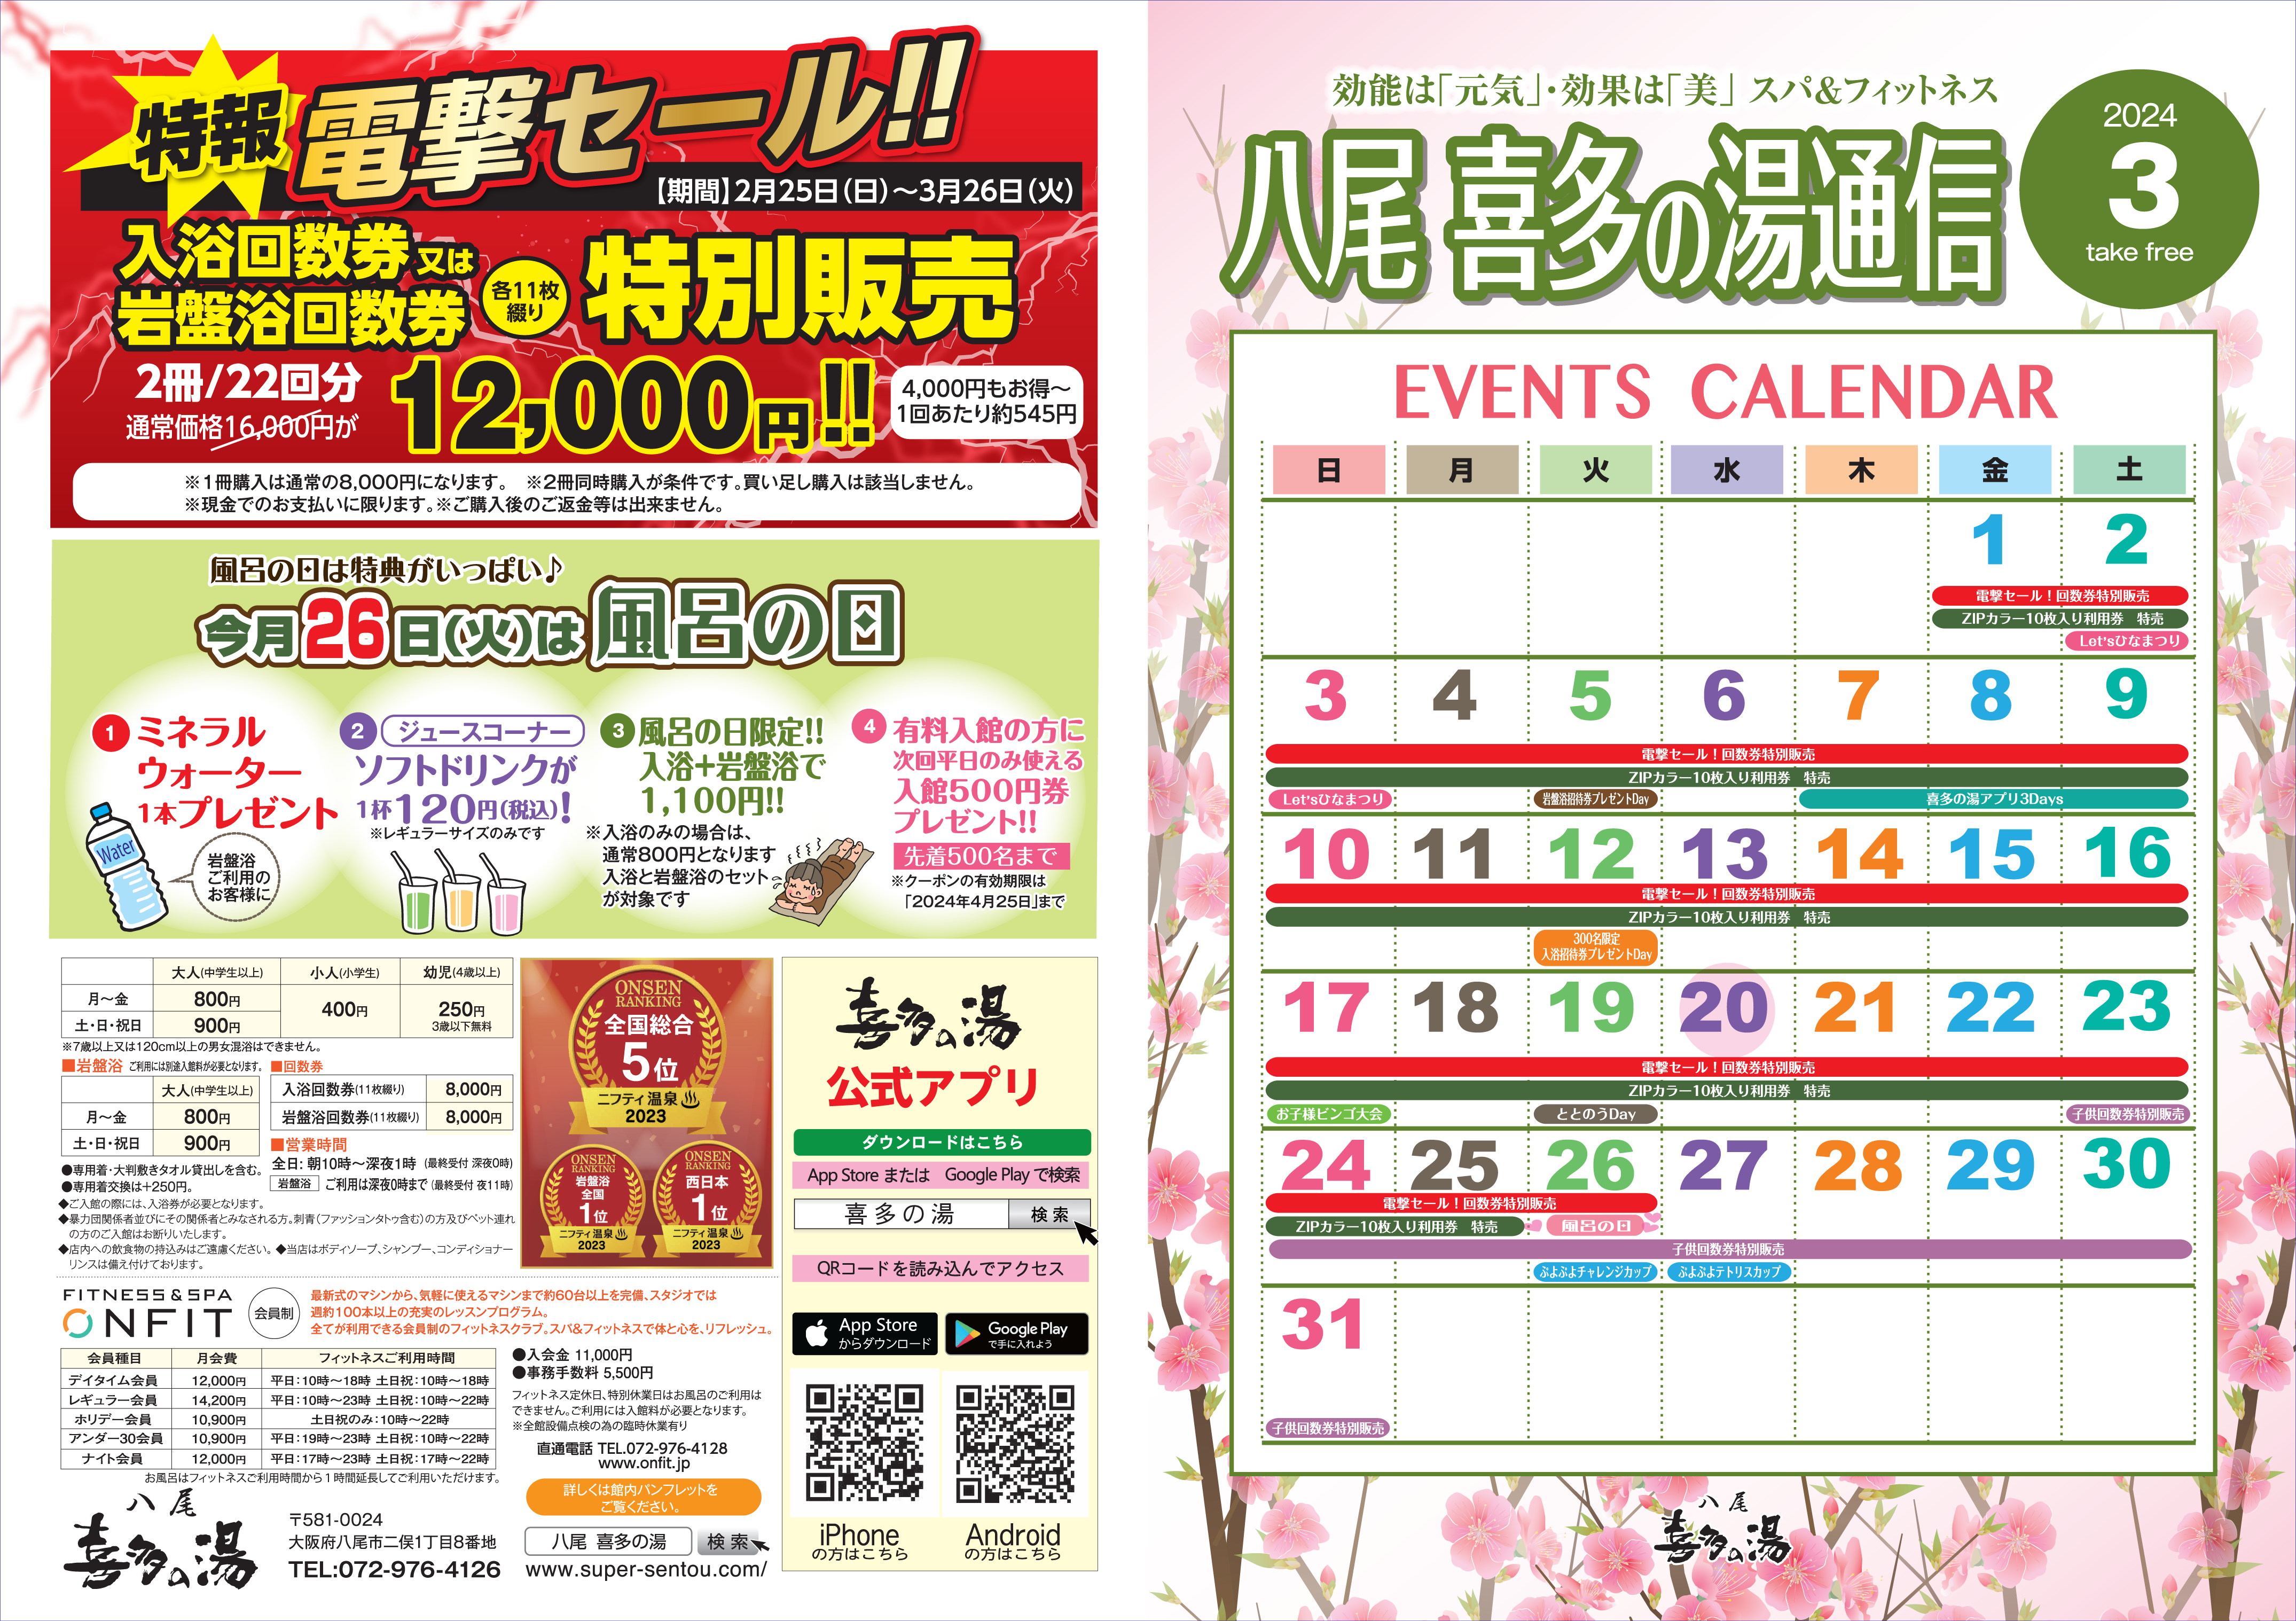 八尾温泉 喜多の湯 イベント情報【3月】 | 喜多の湯